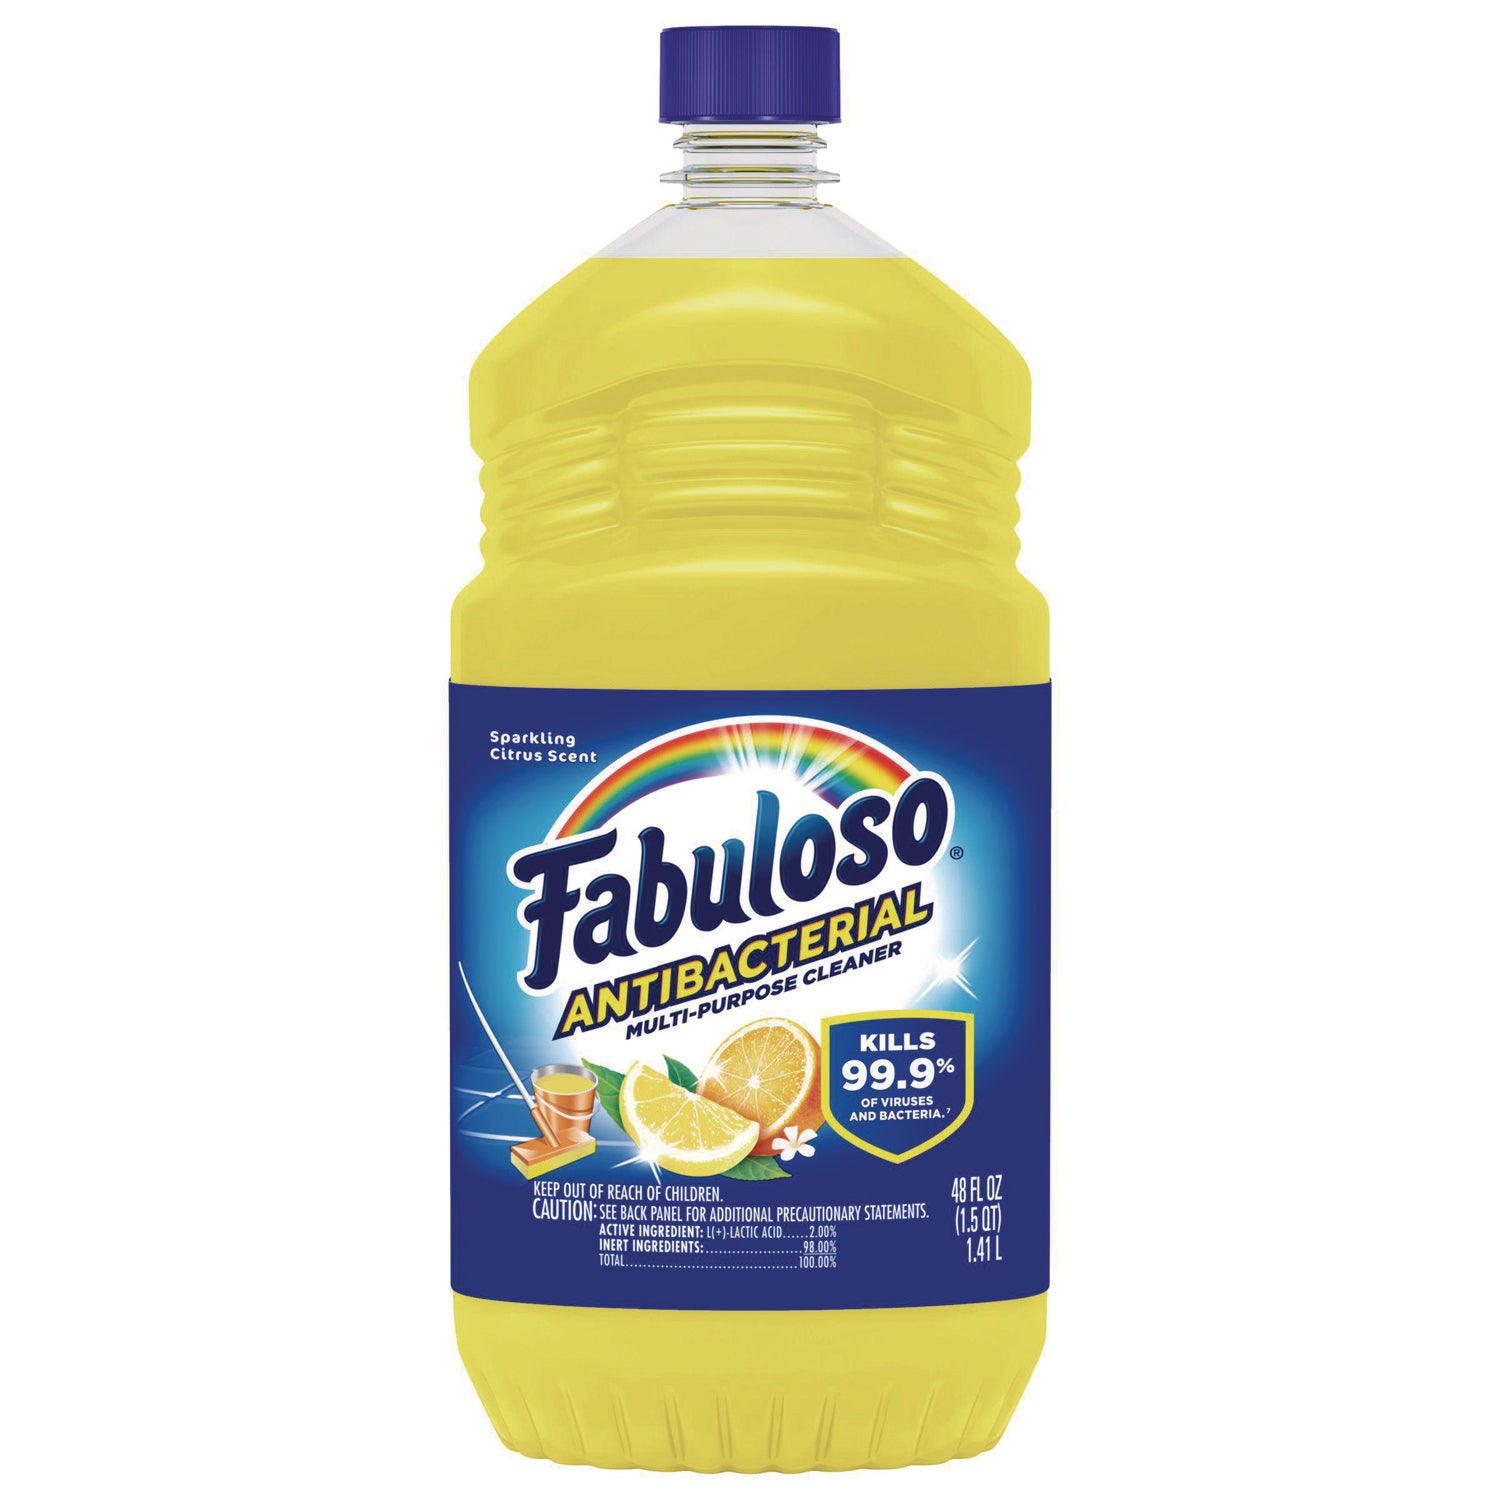 Antibacterial Multi-Purpose Cleaner, Sparkling Citrus Scent, 48 oz Bottle - 1